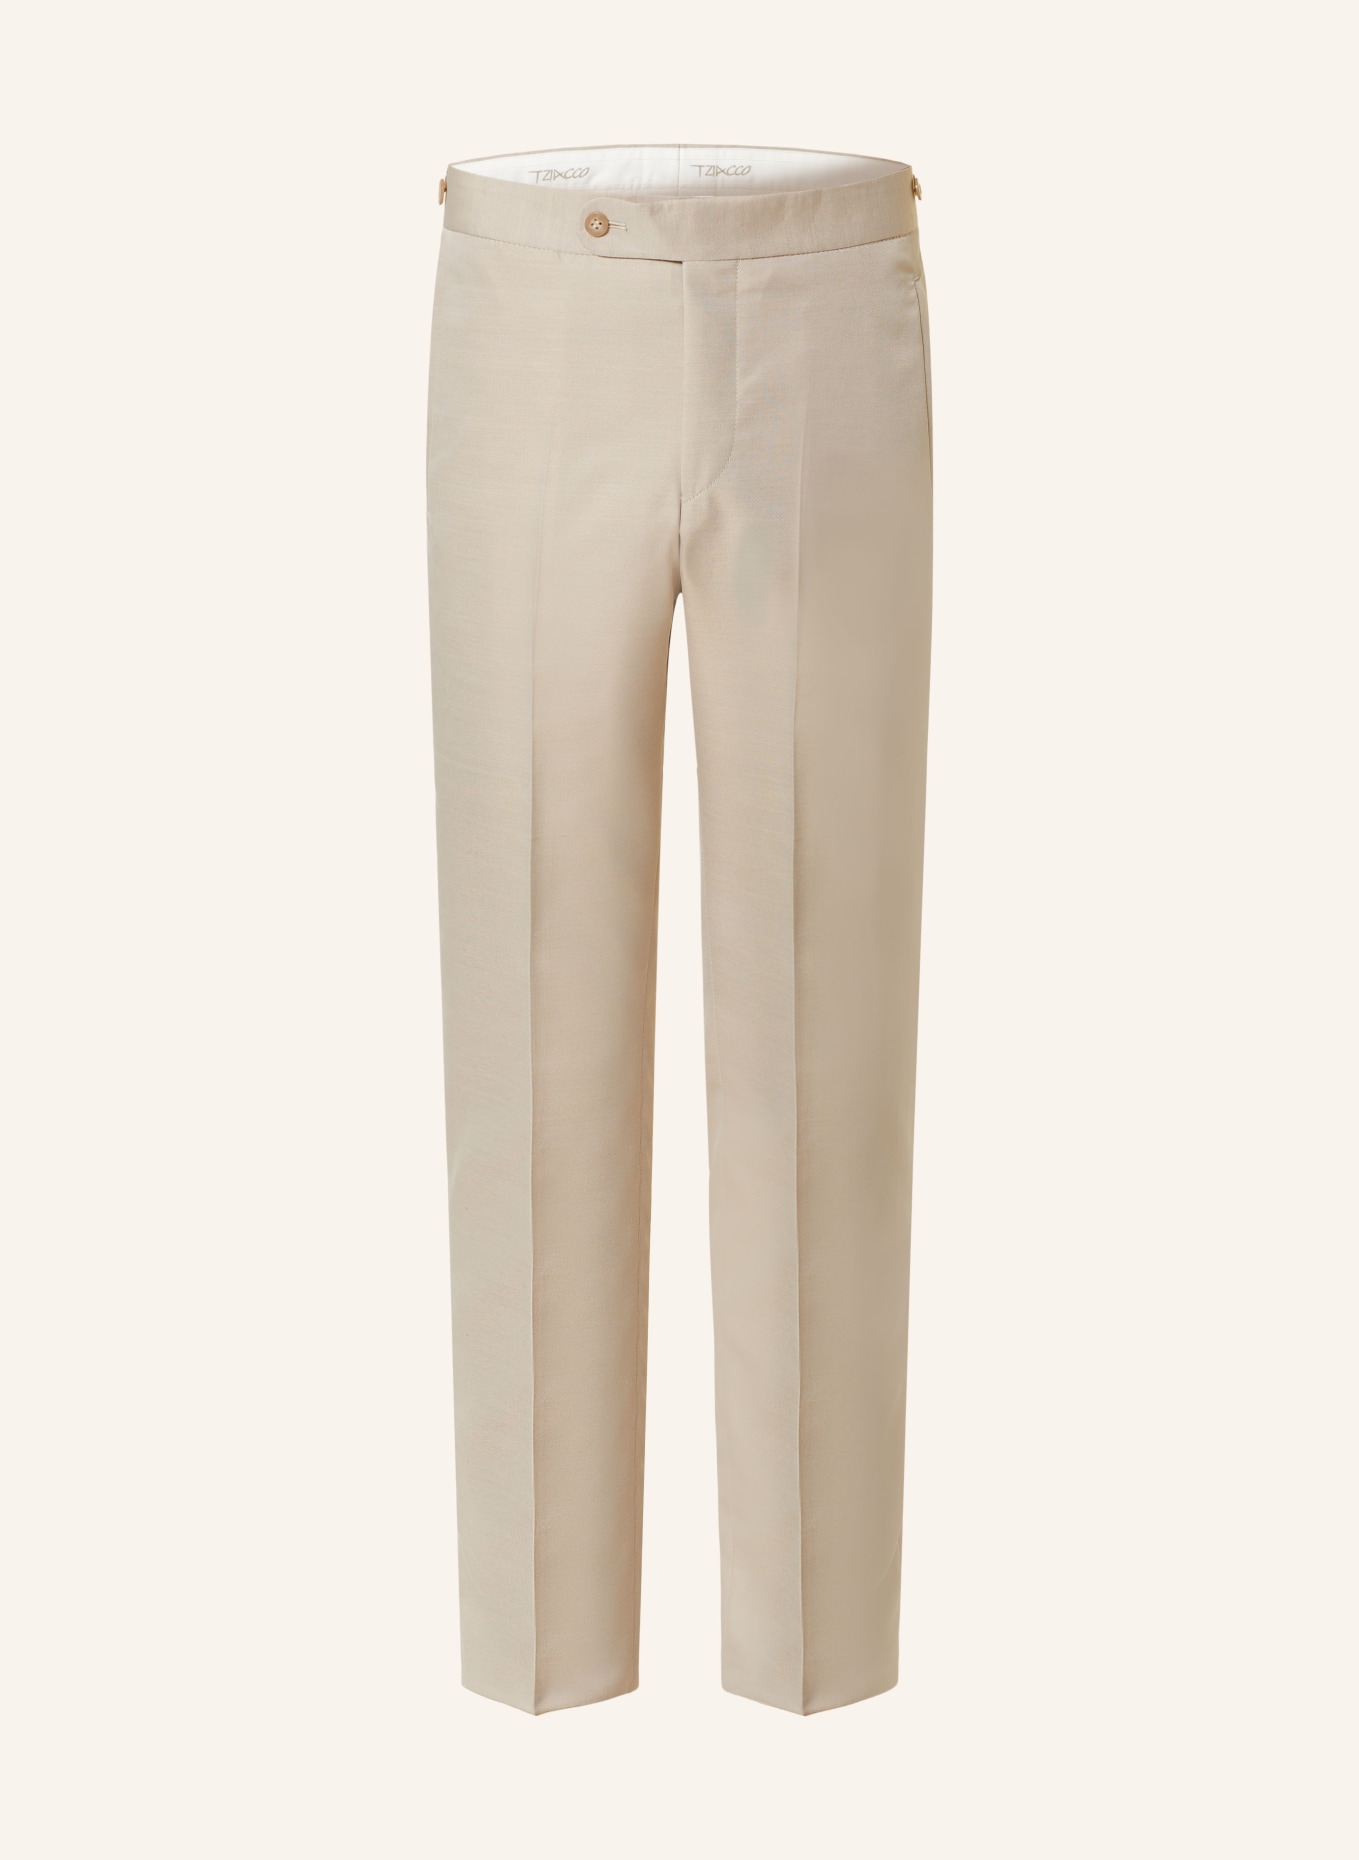 WILVORST Anzughose Extra Slim Fit, Farbe: 083 Beige (Bild 1)